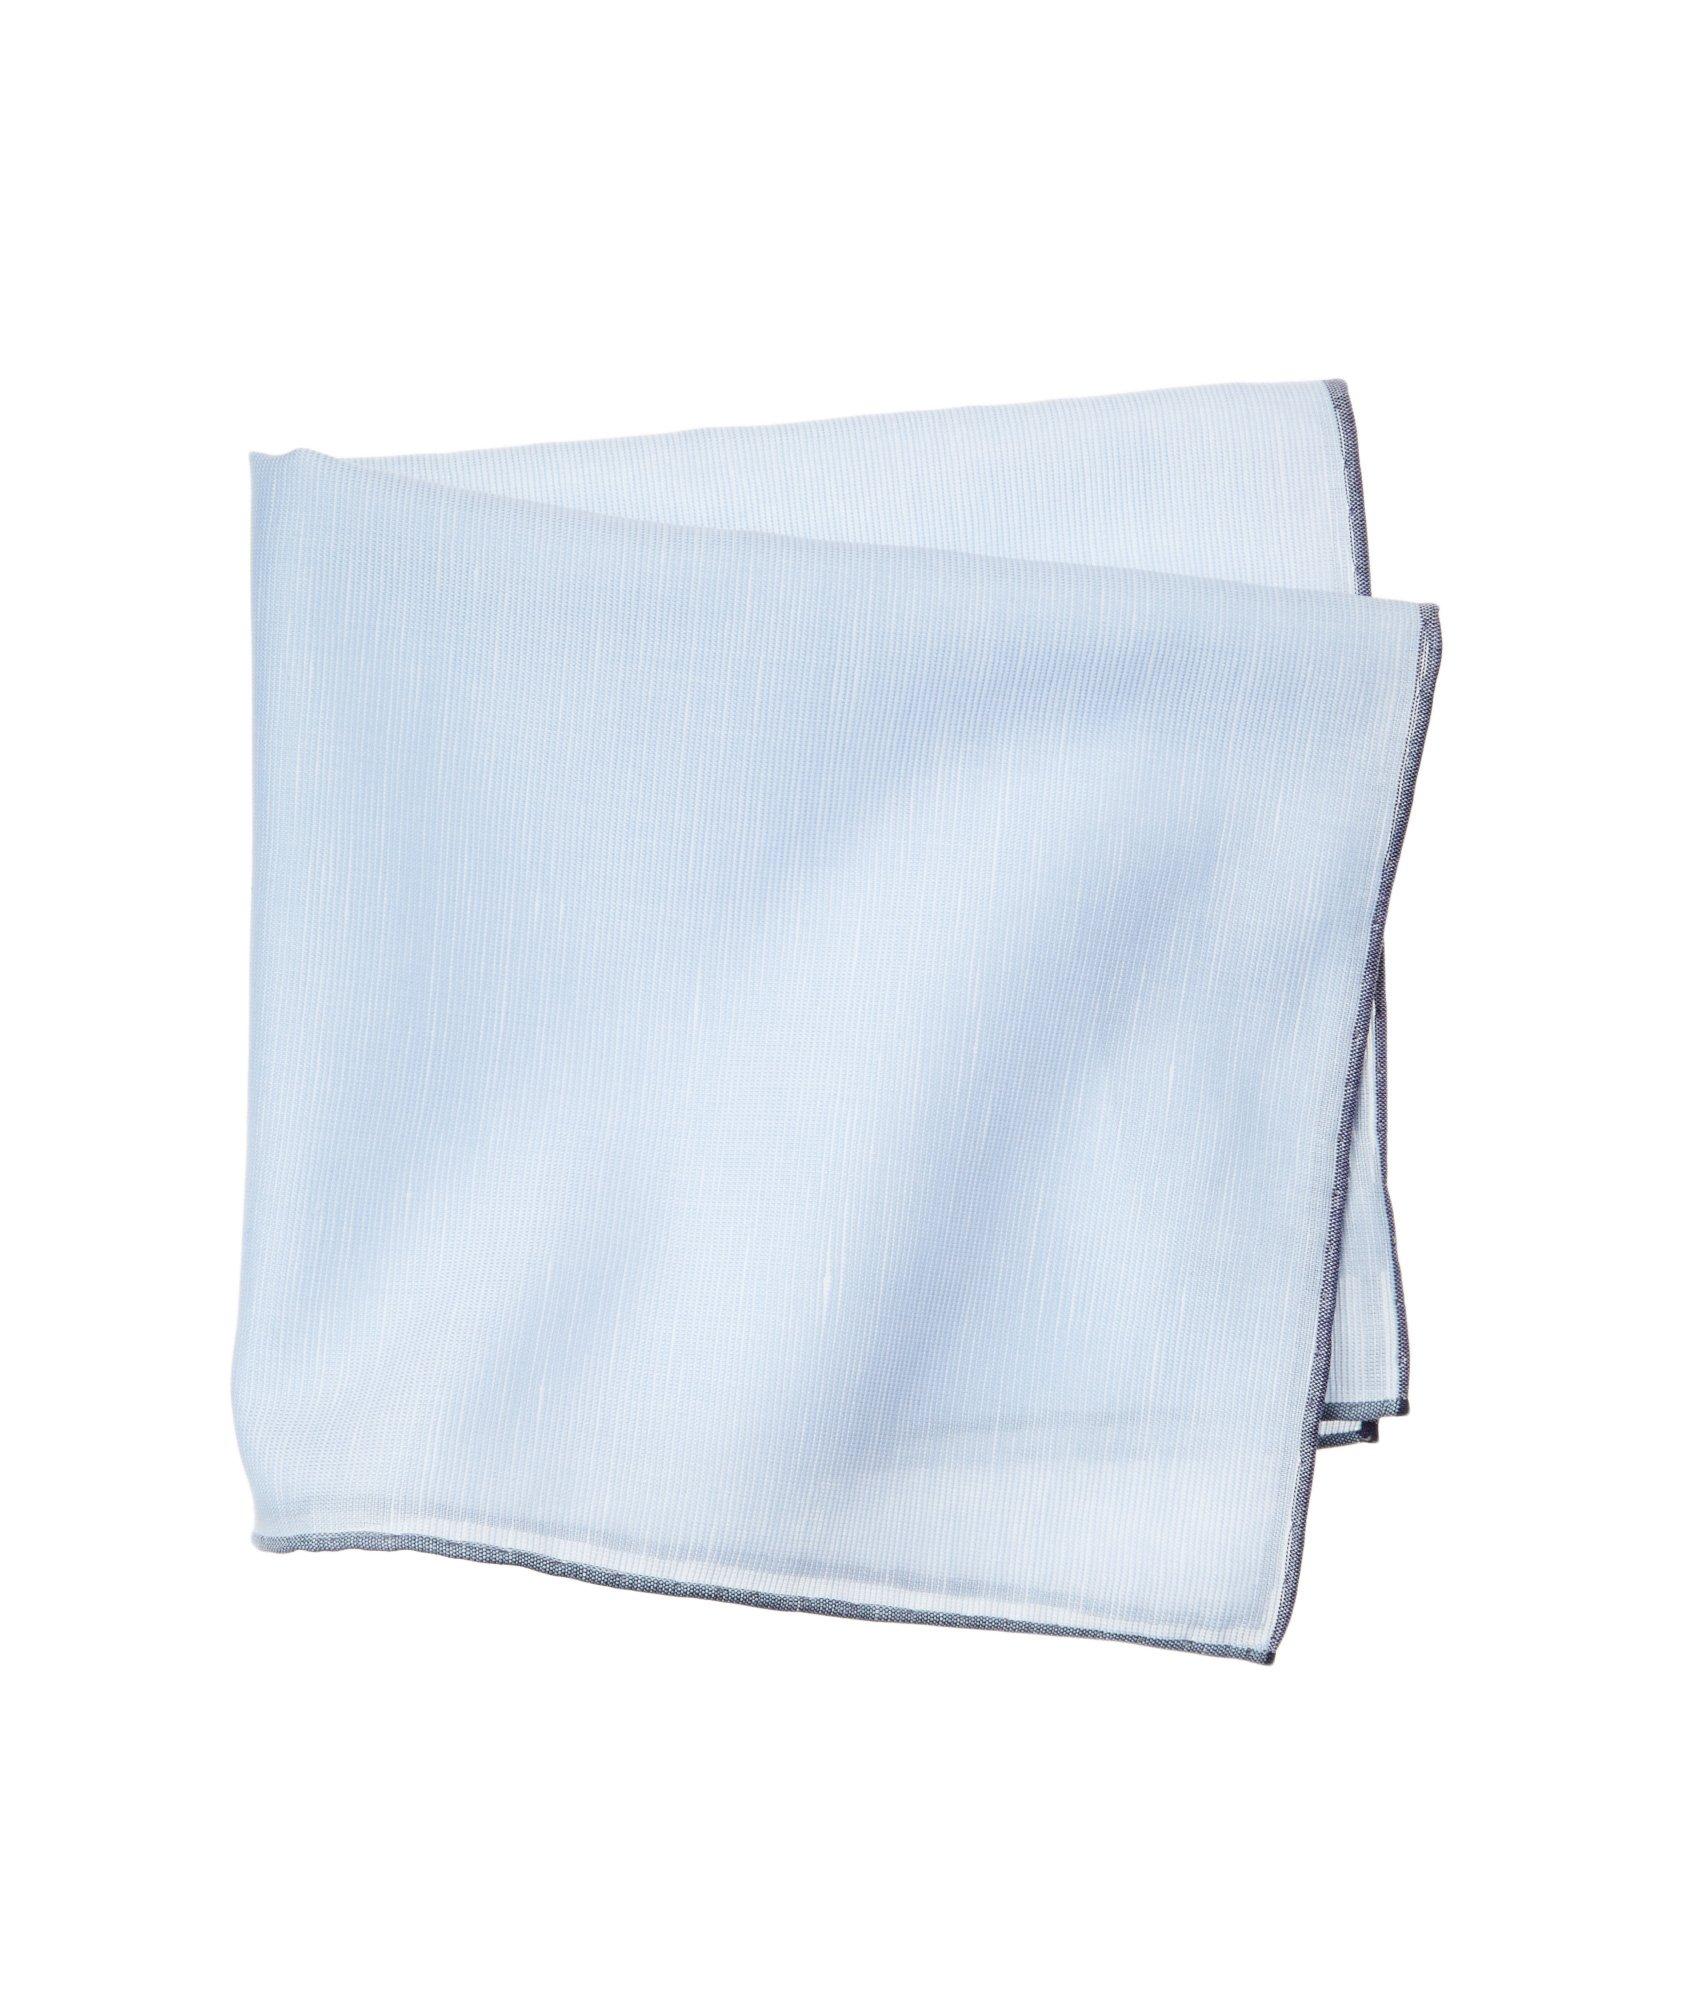 Linen-Cotton Pocket Square image 0